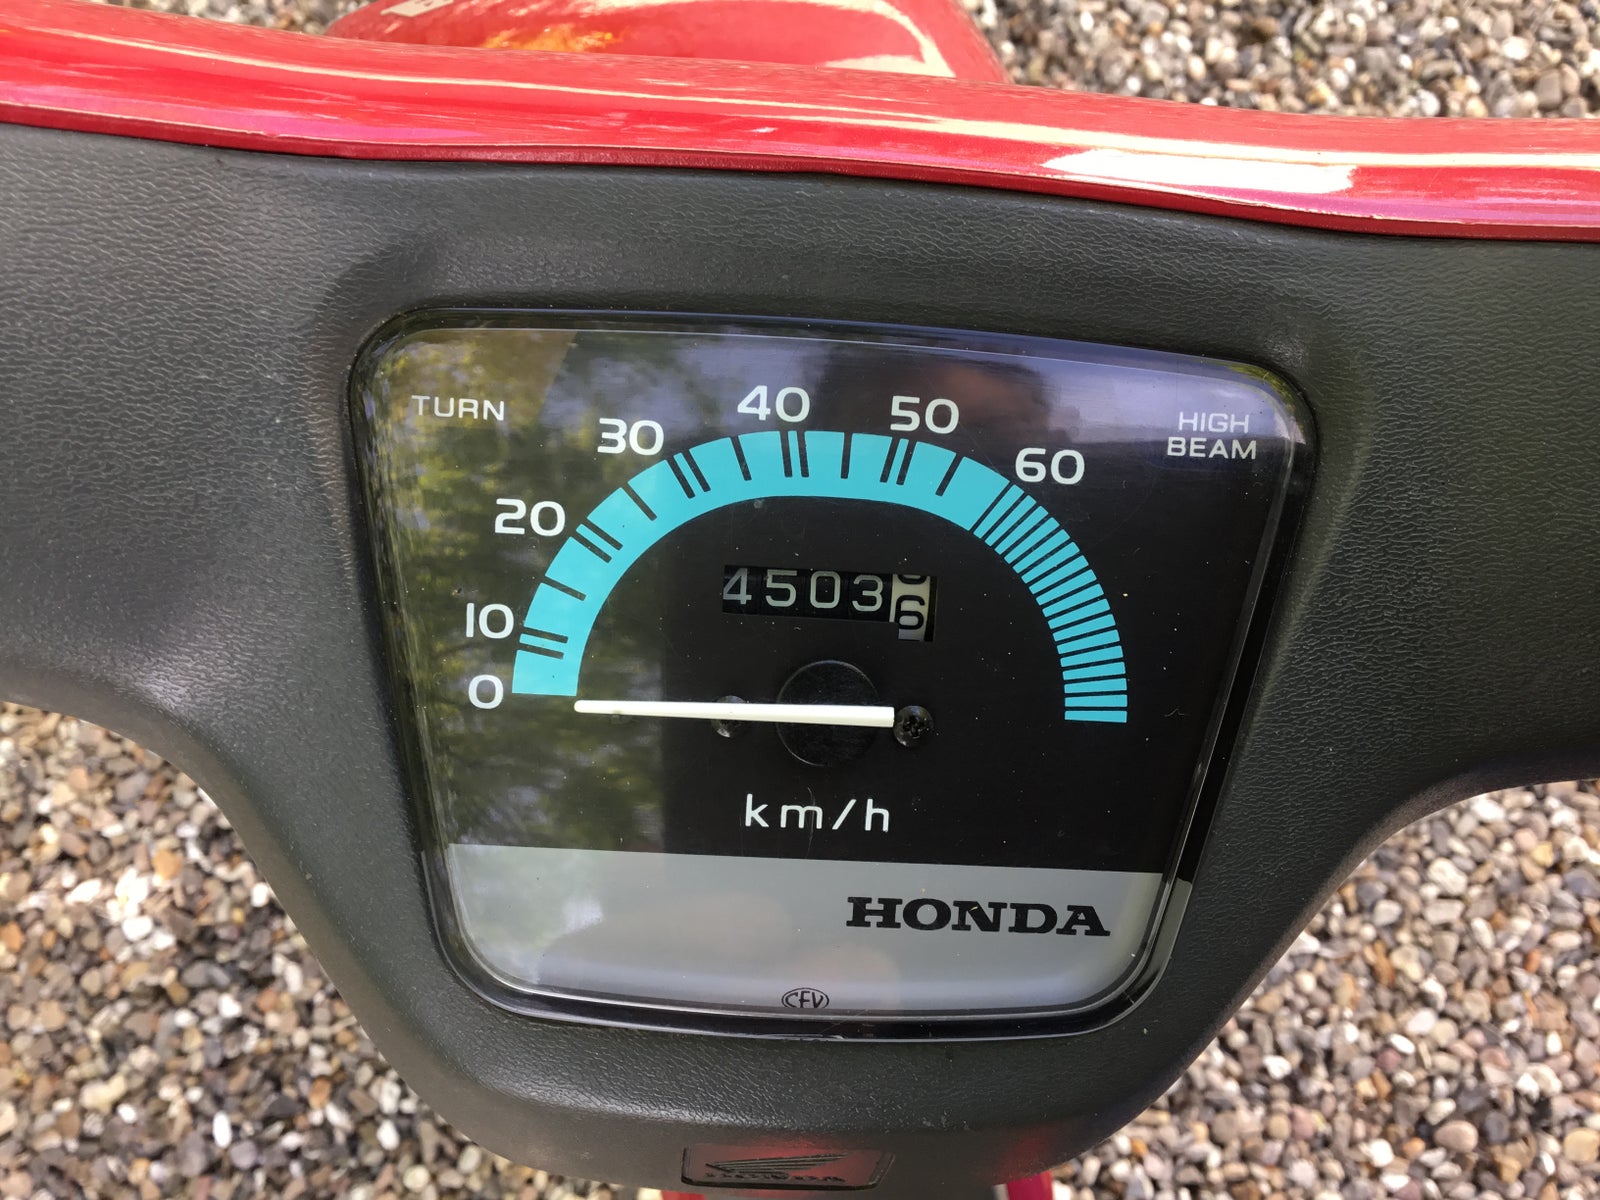 Honda Honda Wallaroo, 2000, 4500 km